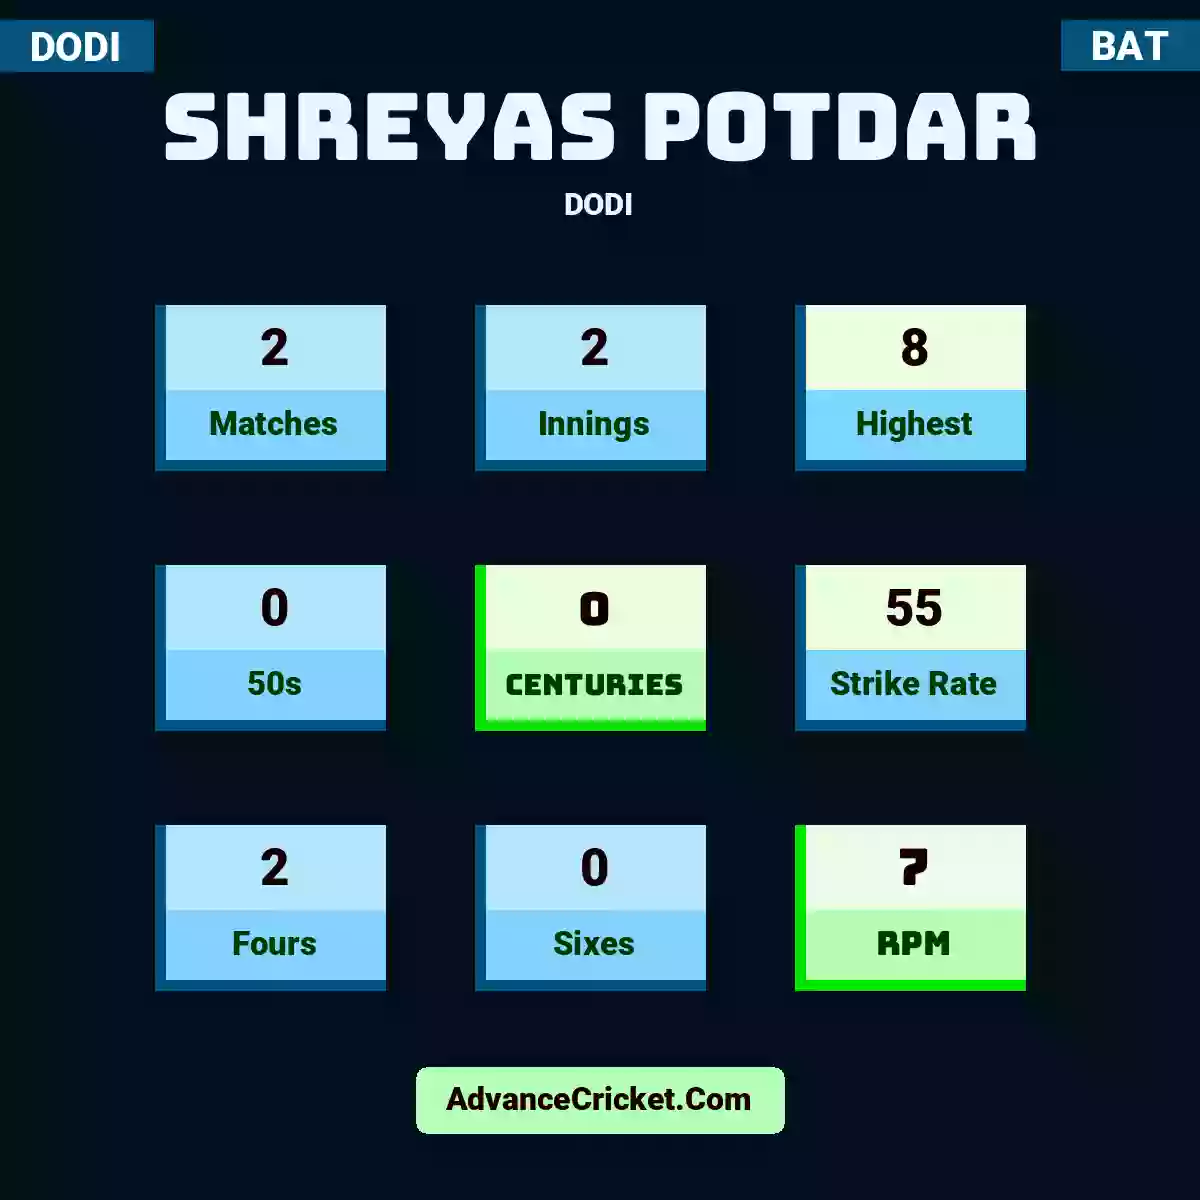 Shreyas Potdar DODI , Shreyas Potdar played 2 matches, scored 8 runs as highest, 0 half-centuries, and 0 centuries, with a strike rate of 55. S.Potdar hit 2 fours and 0 sixes, with an RPM of 7.